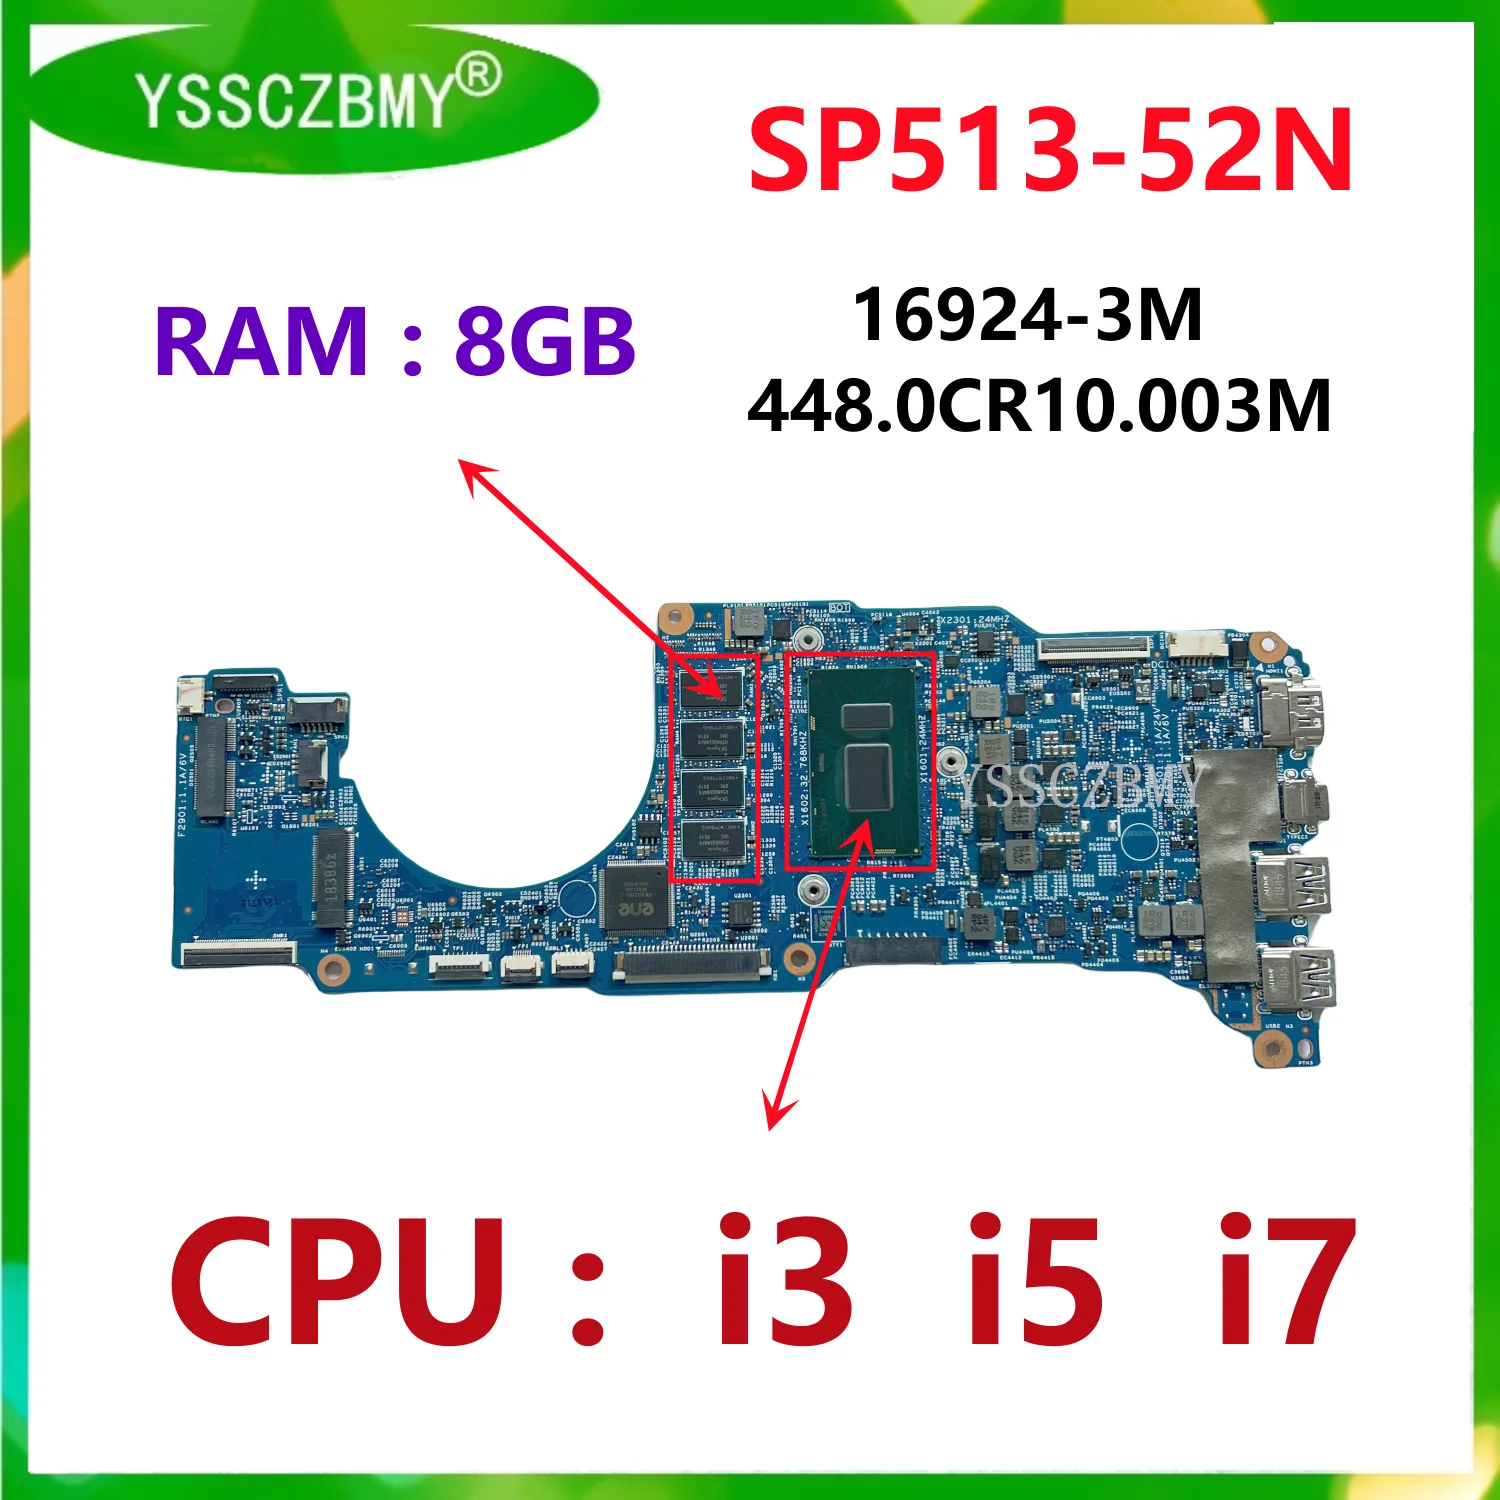 ̼  5 SP513-52 SP513-52N Ʈ  SP513-52N κ, CPU i3 i5 i7 RAM 8GB, 16924-3M 448.0CR10.003M